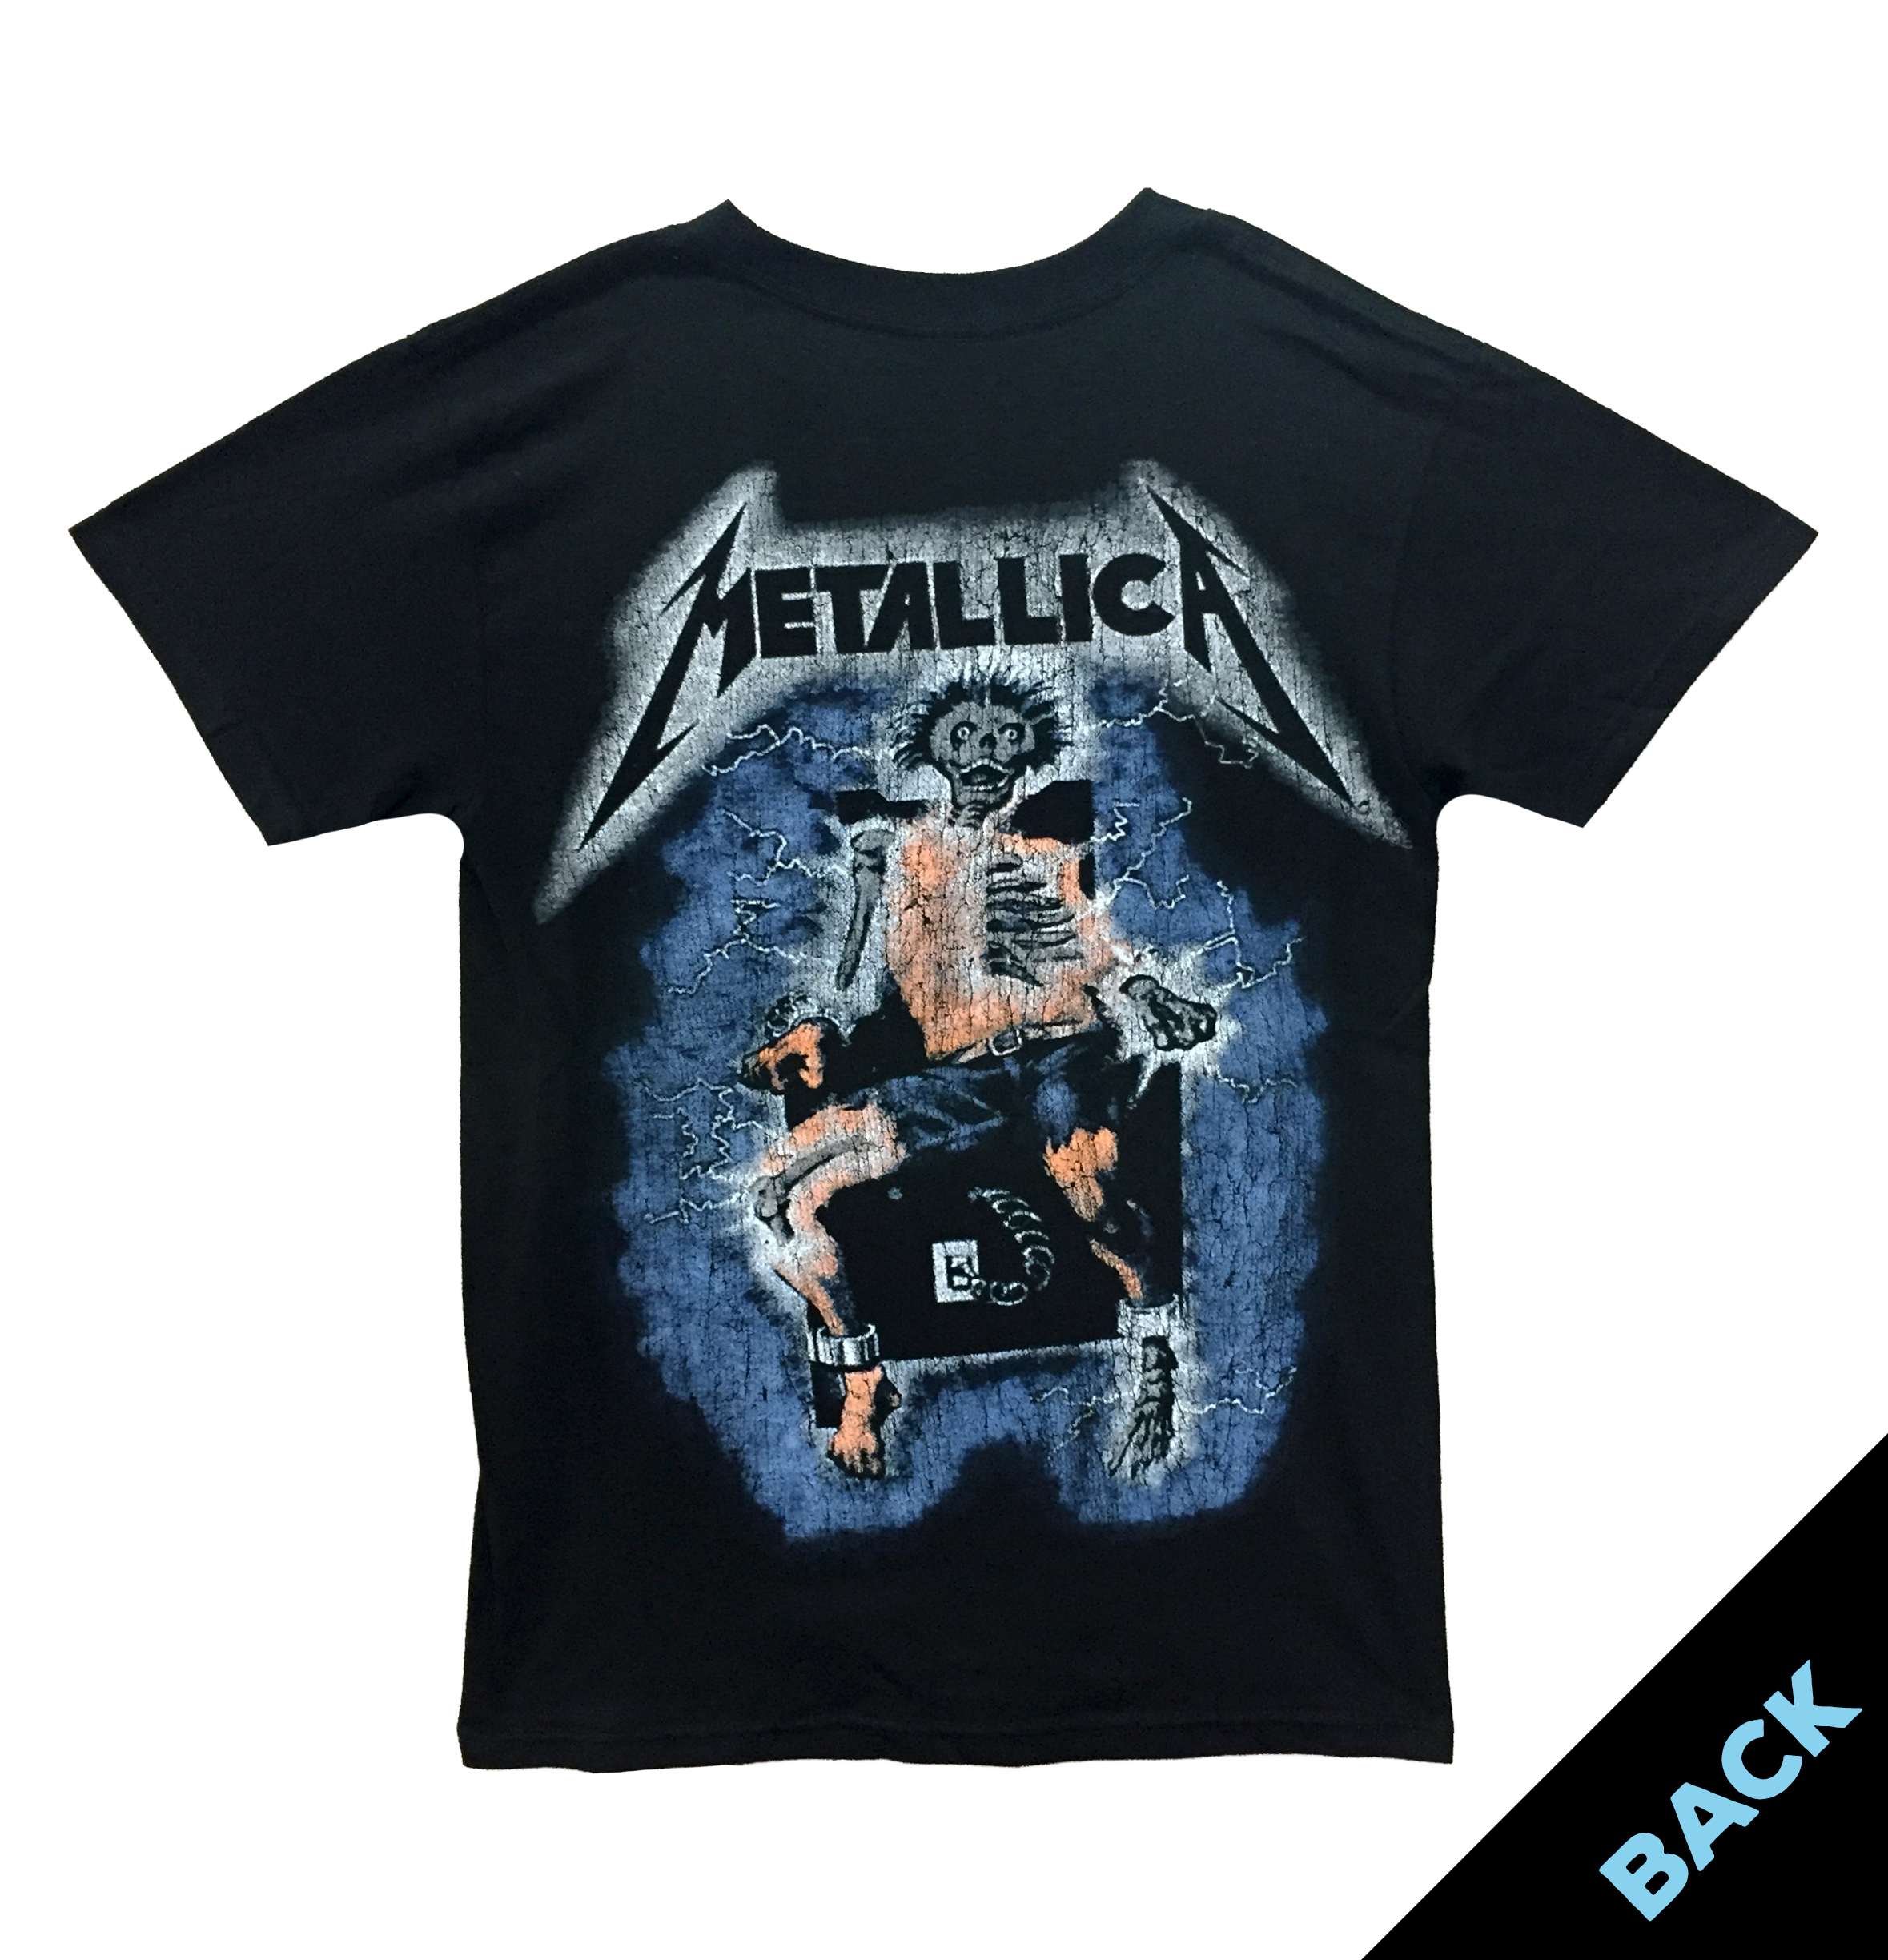 Metallica: Metal Up Your Ass - Vancouver Rock Shop